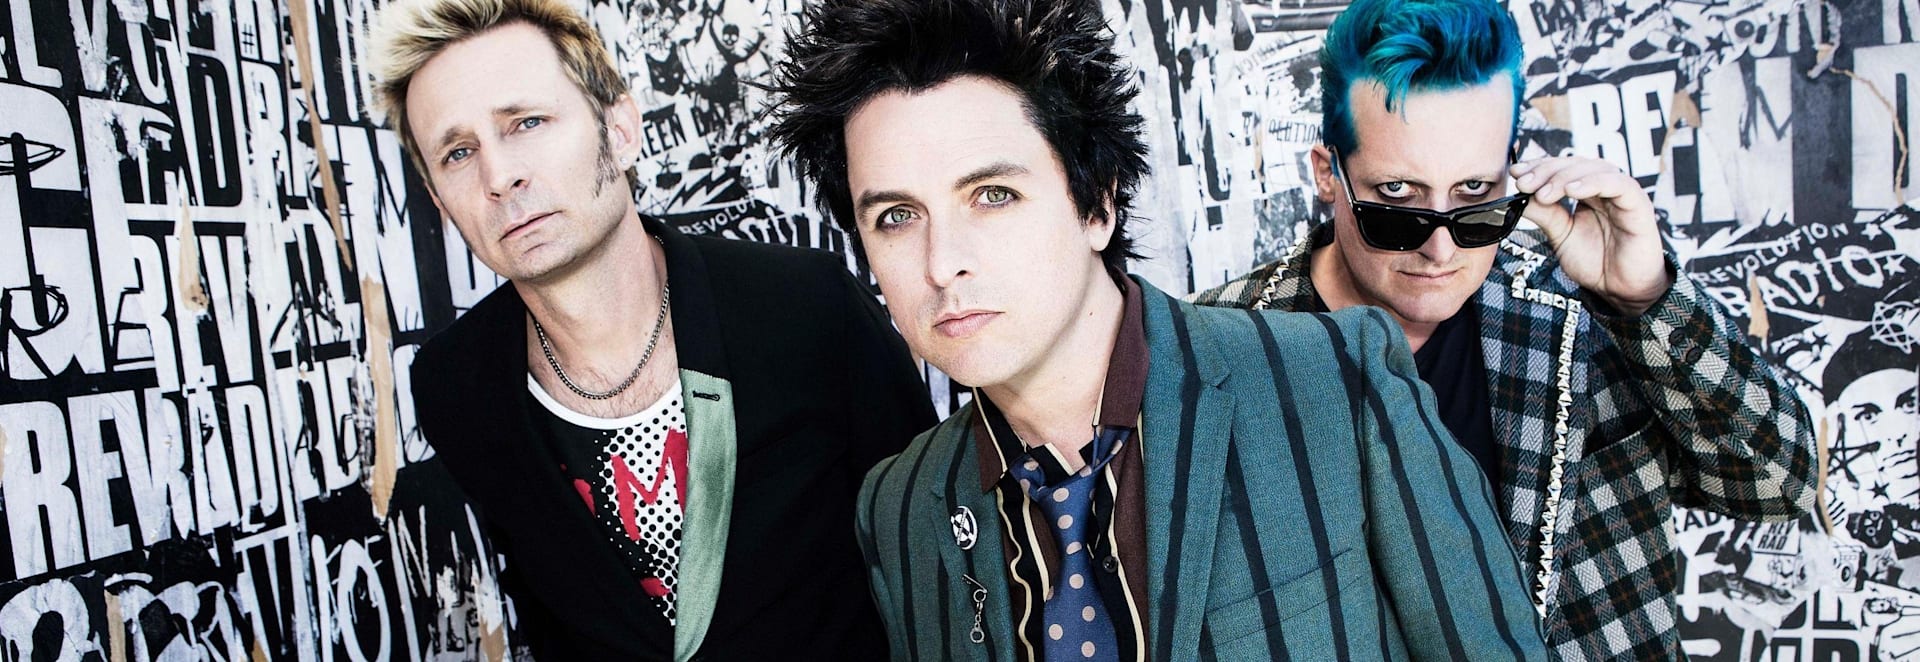 Banda Green Day, sobre fondo oscuro, con los ojos pintados de negro